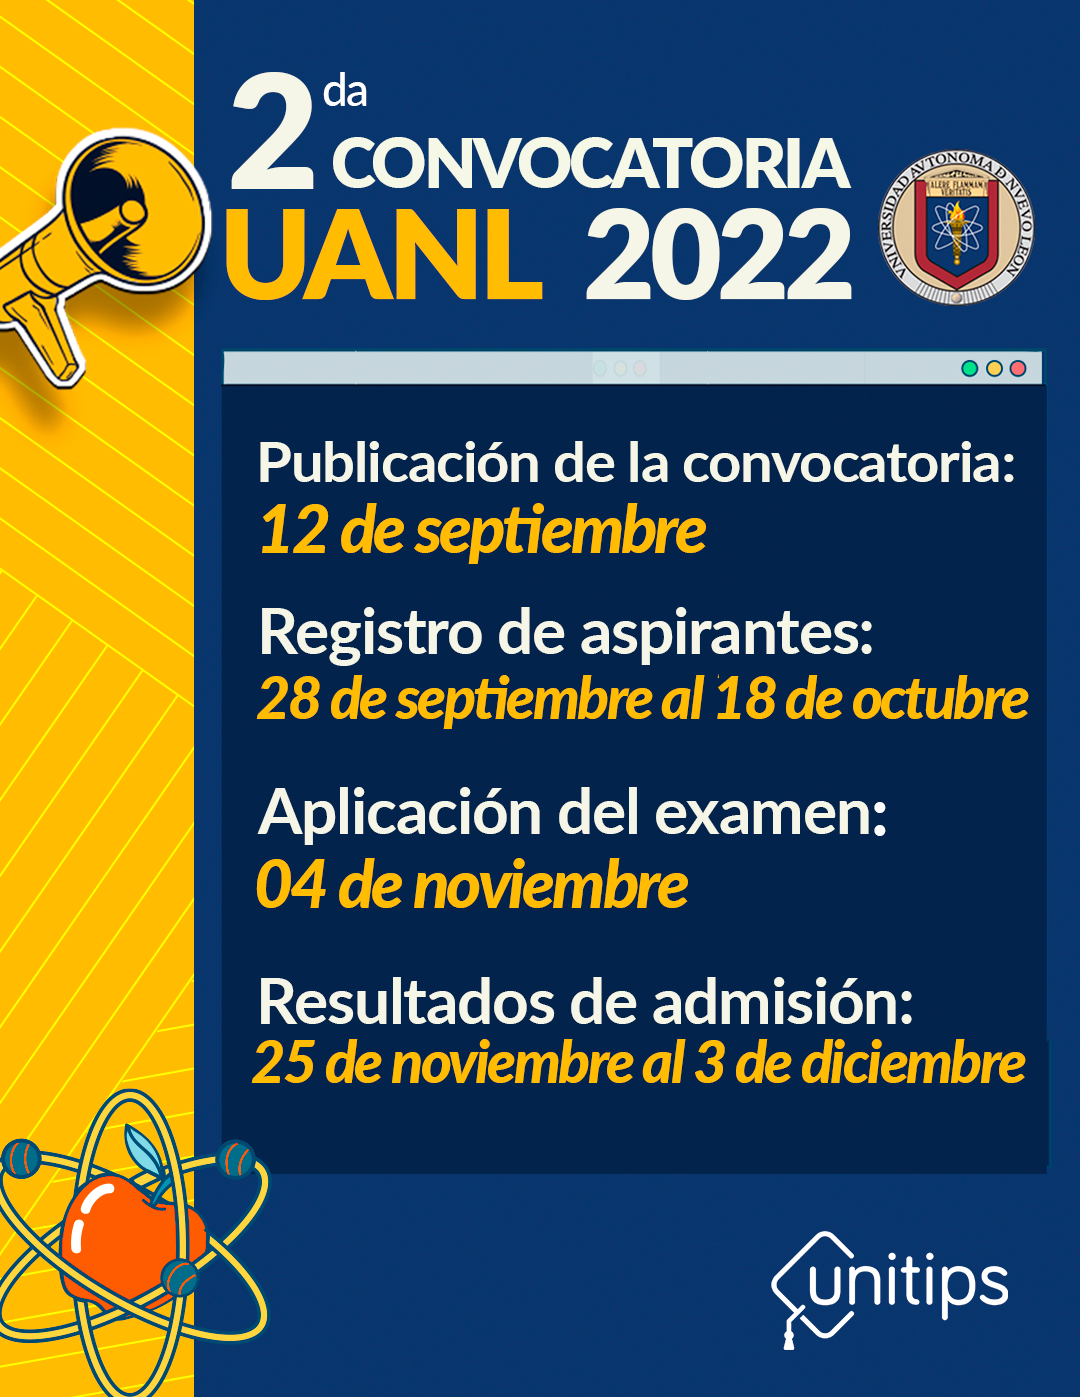 ¿Cuándo es el examen de admisión para la UANL 2022?